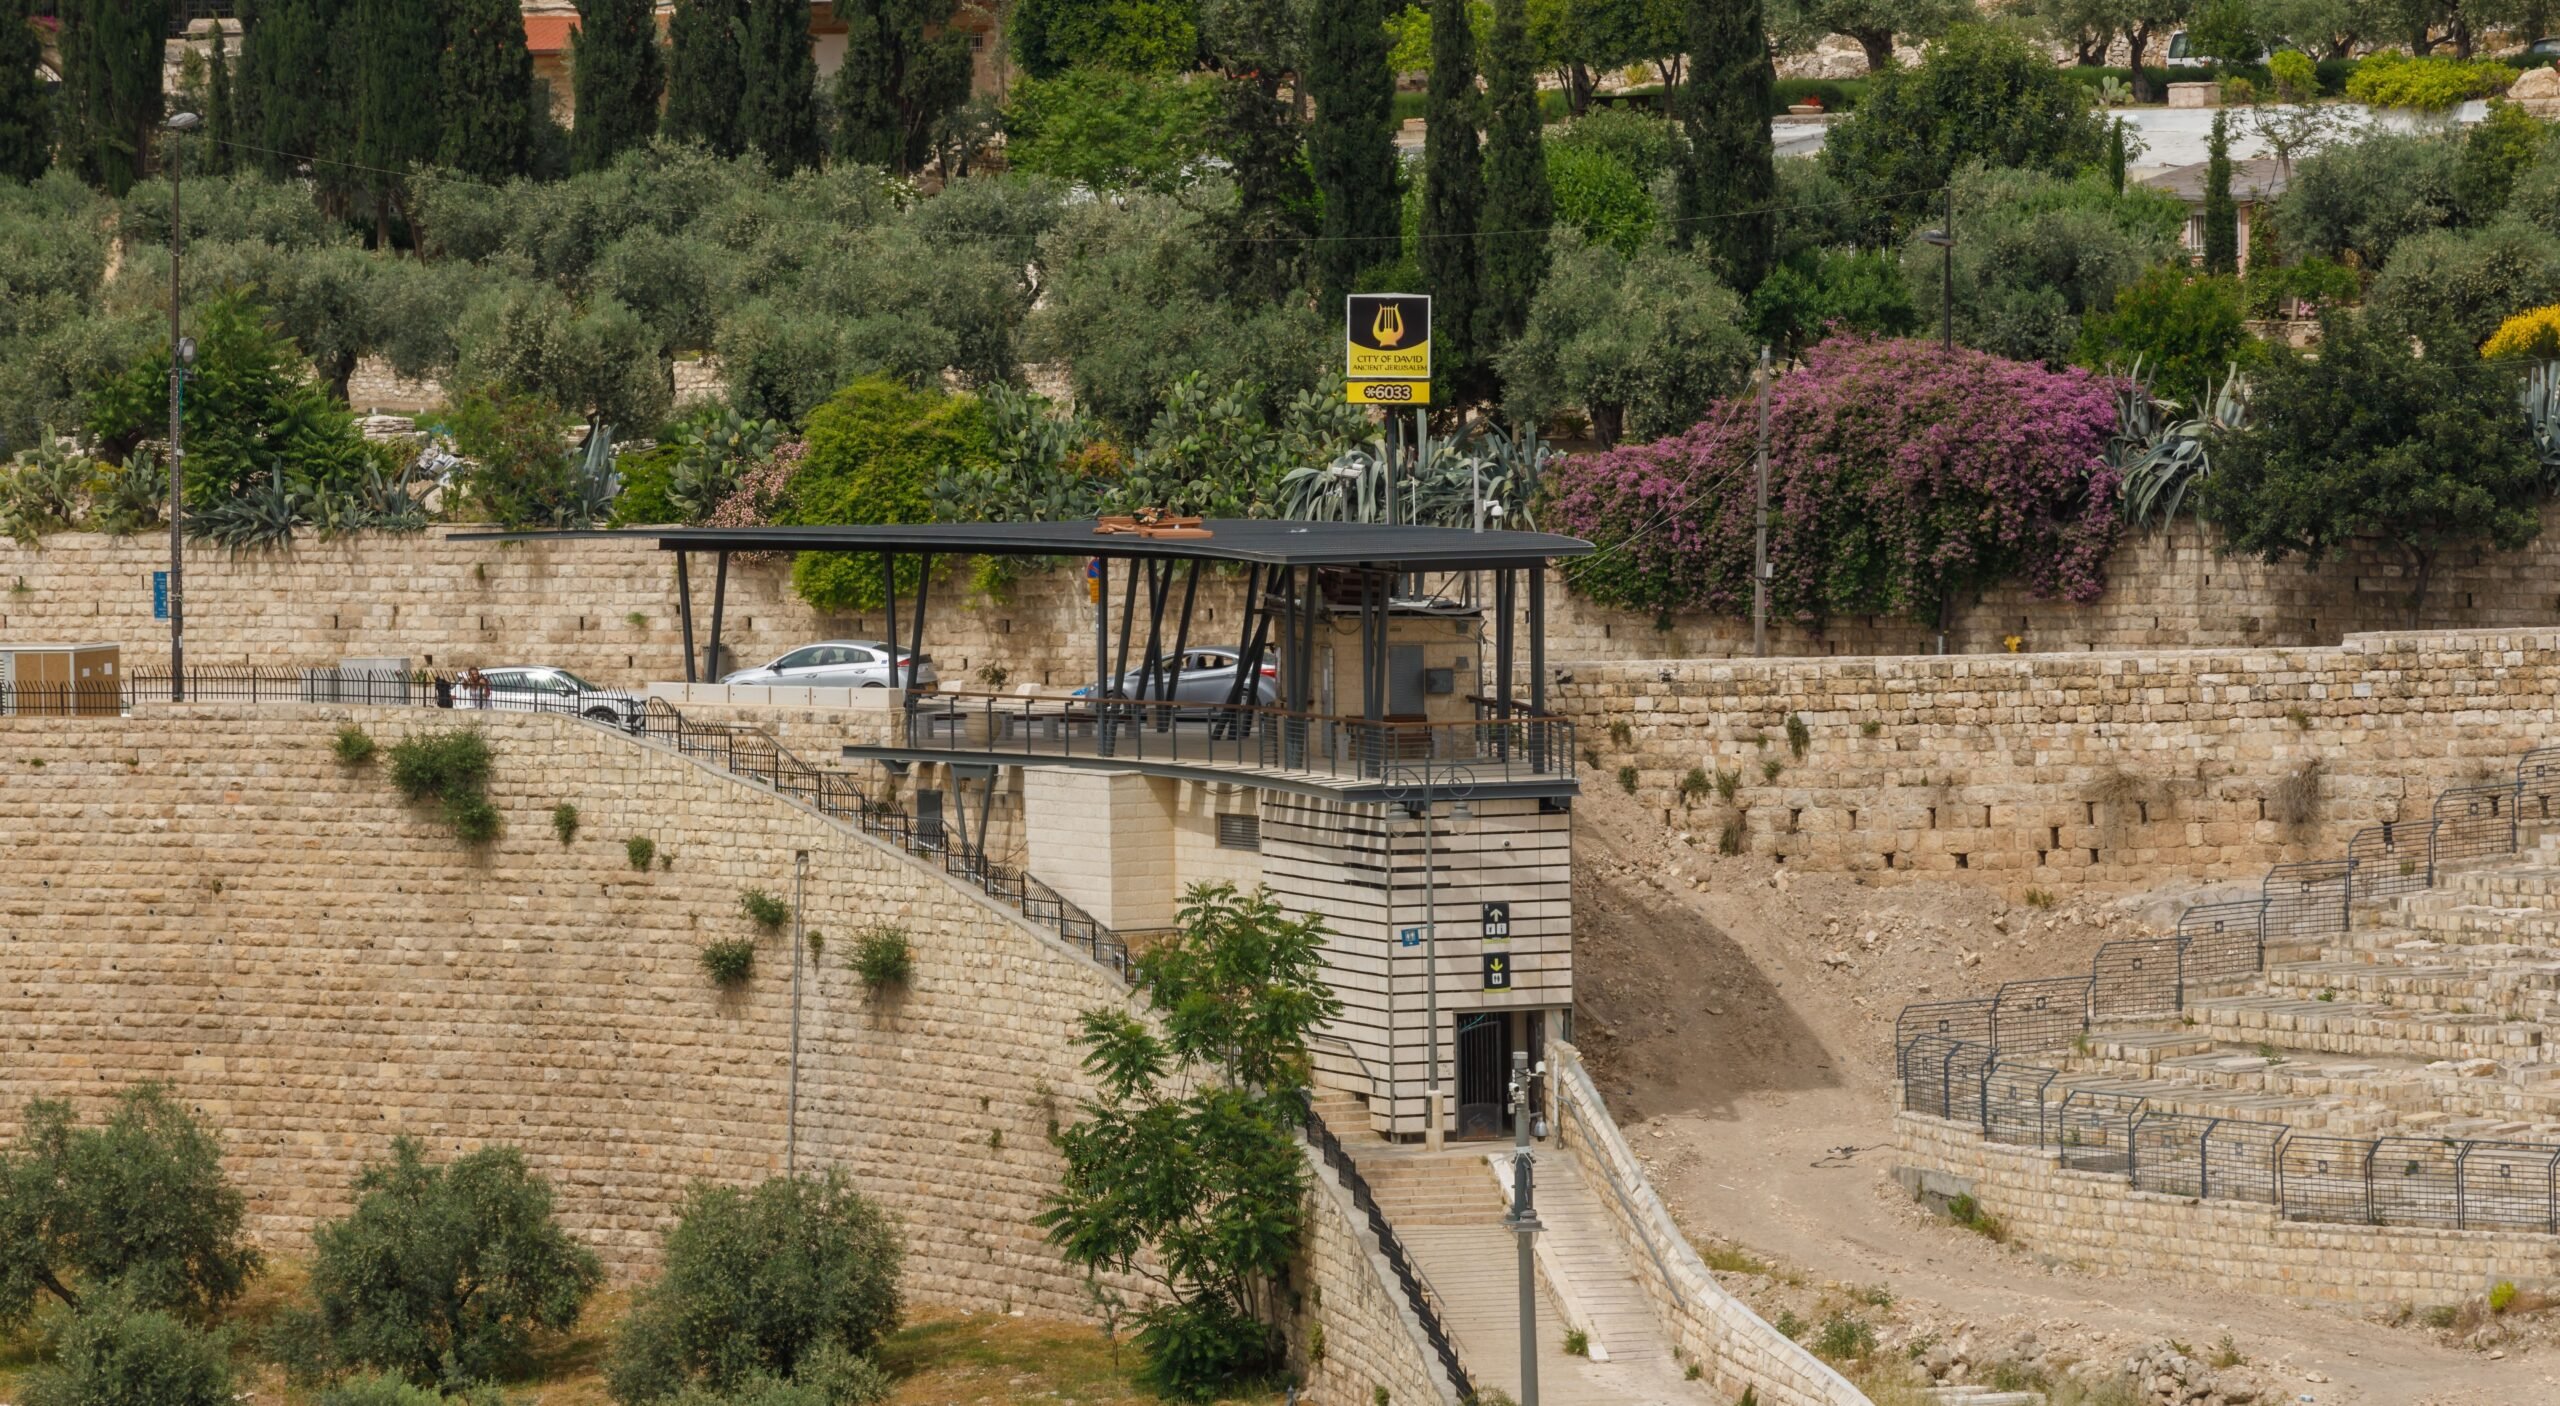 Mount of Olives Information Center Photo: Eliyahu Yannai